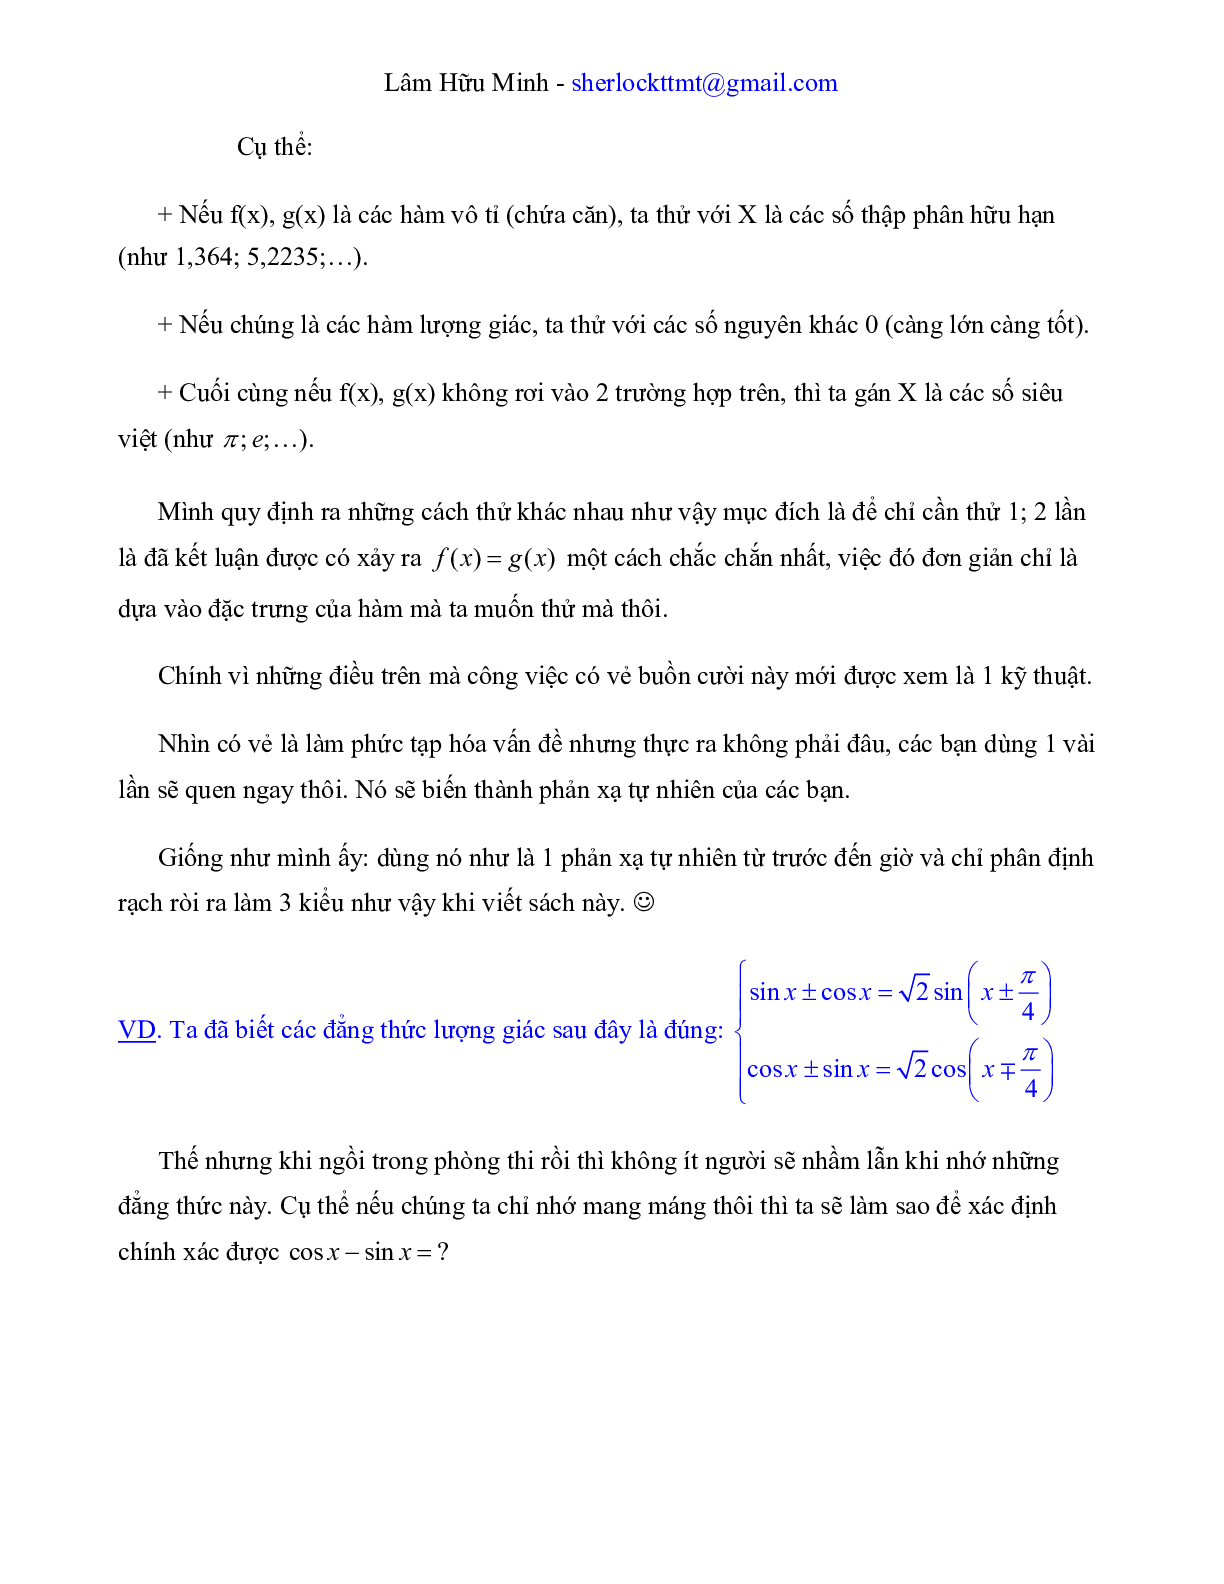 Công phá đề thi THPT QG môn Toán bằng kỹ thuật Casio (trang 10)